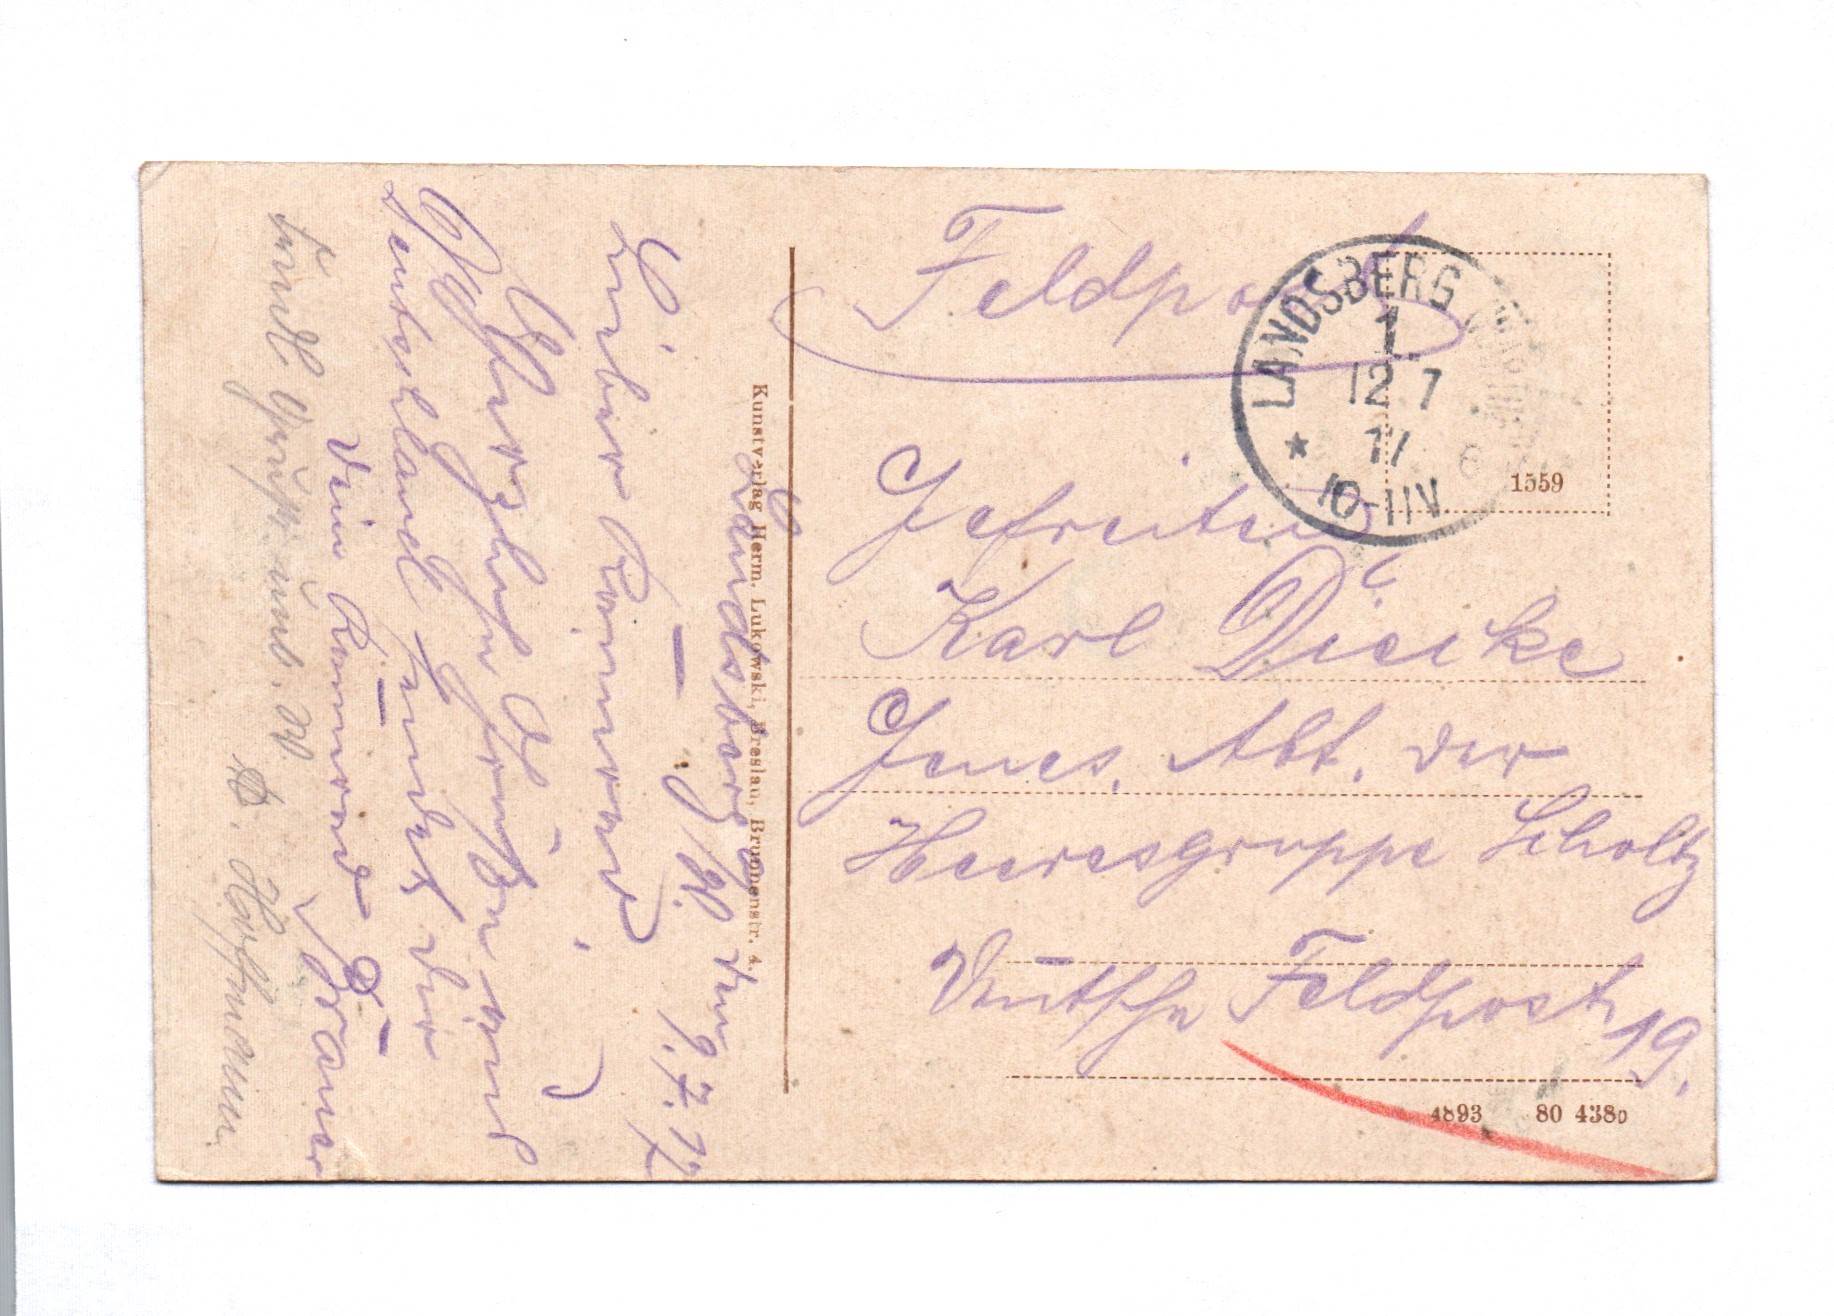 Ak Landsberg a. W. Pavillon auf dem Kosaken-Berge 1917